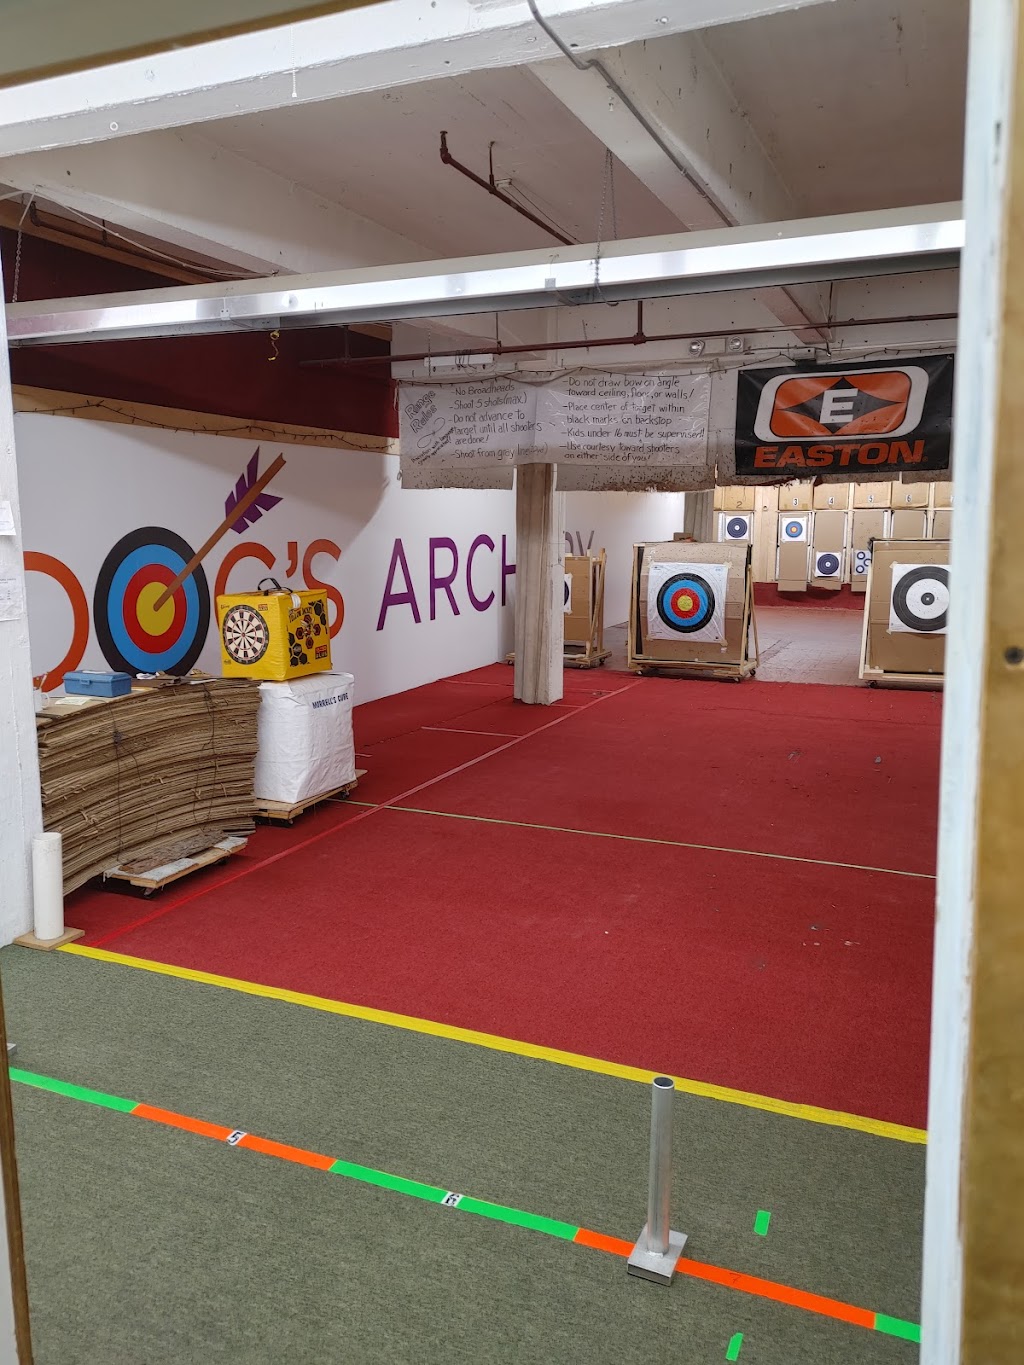 Docs Archery Sales & Services | 908 Niagara Falls Blvd, North Tonawanda, NY 14120, USA | Phone: (716) 693-2703